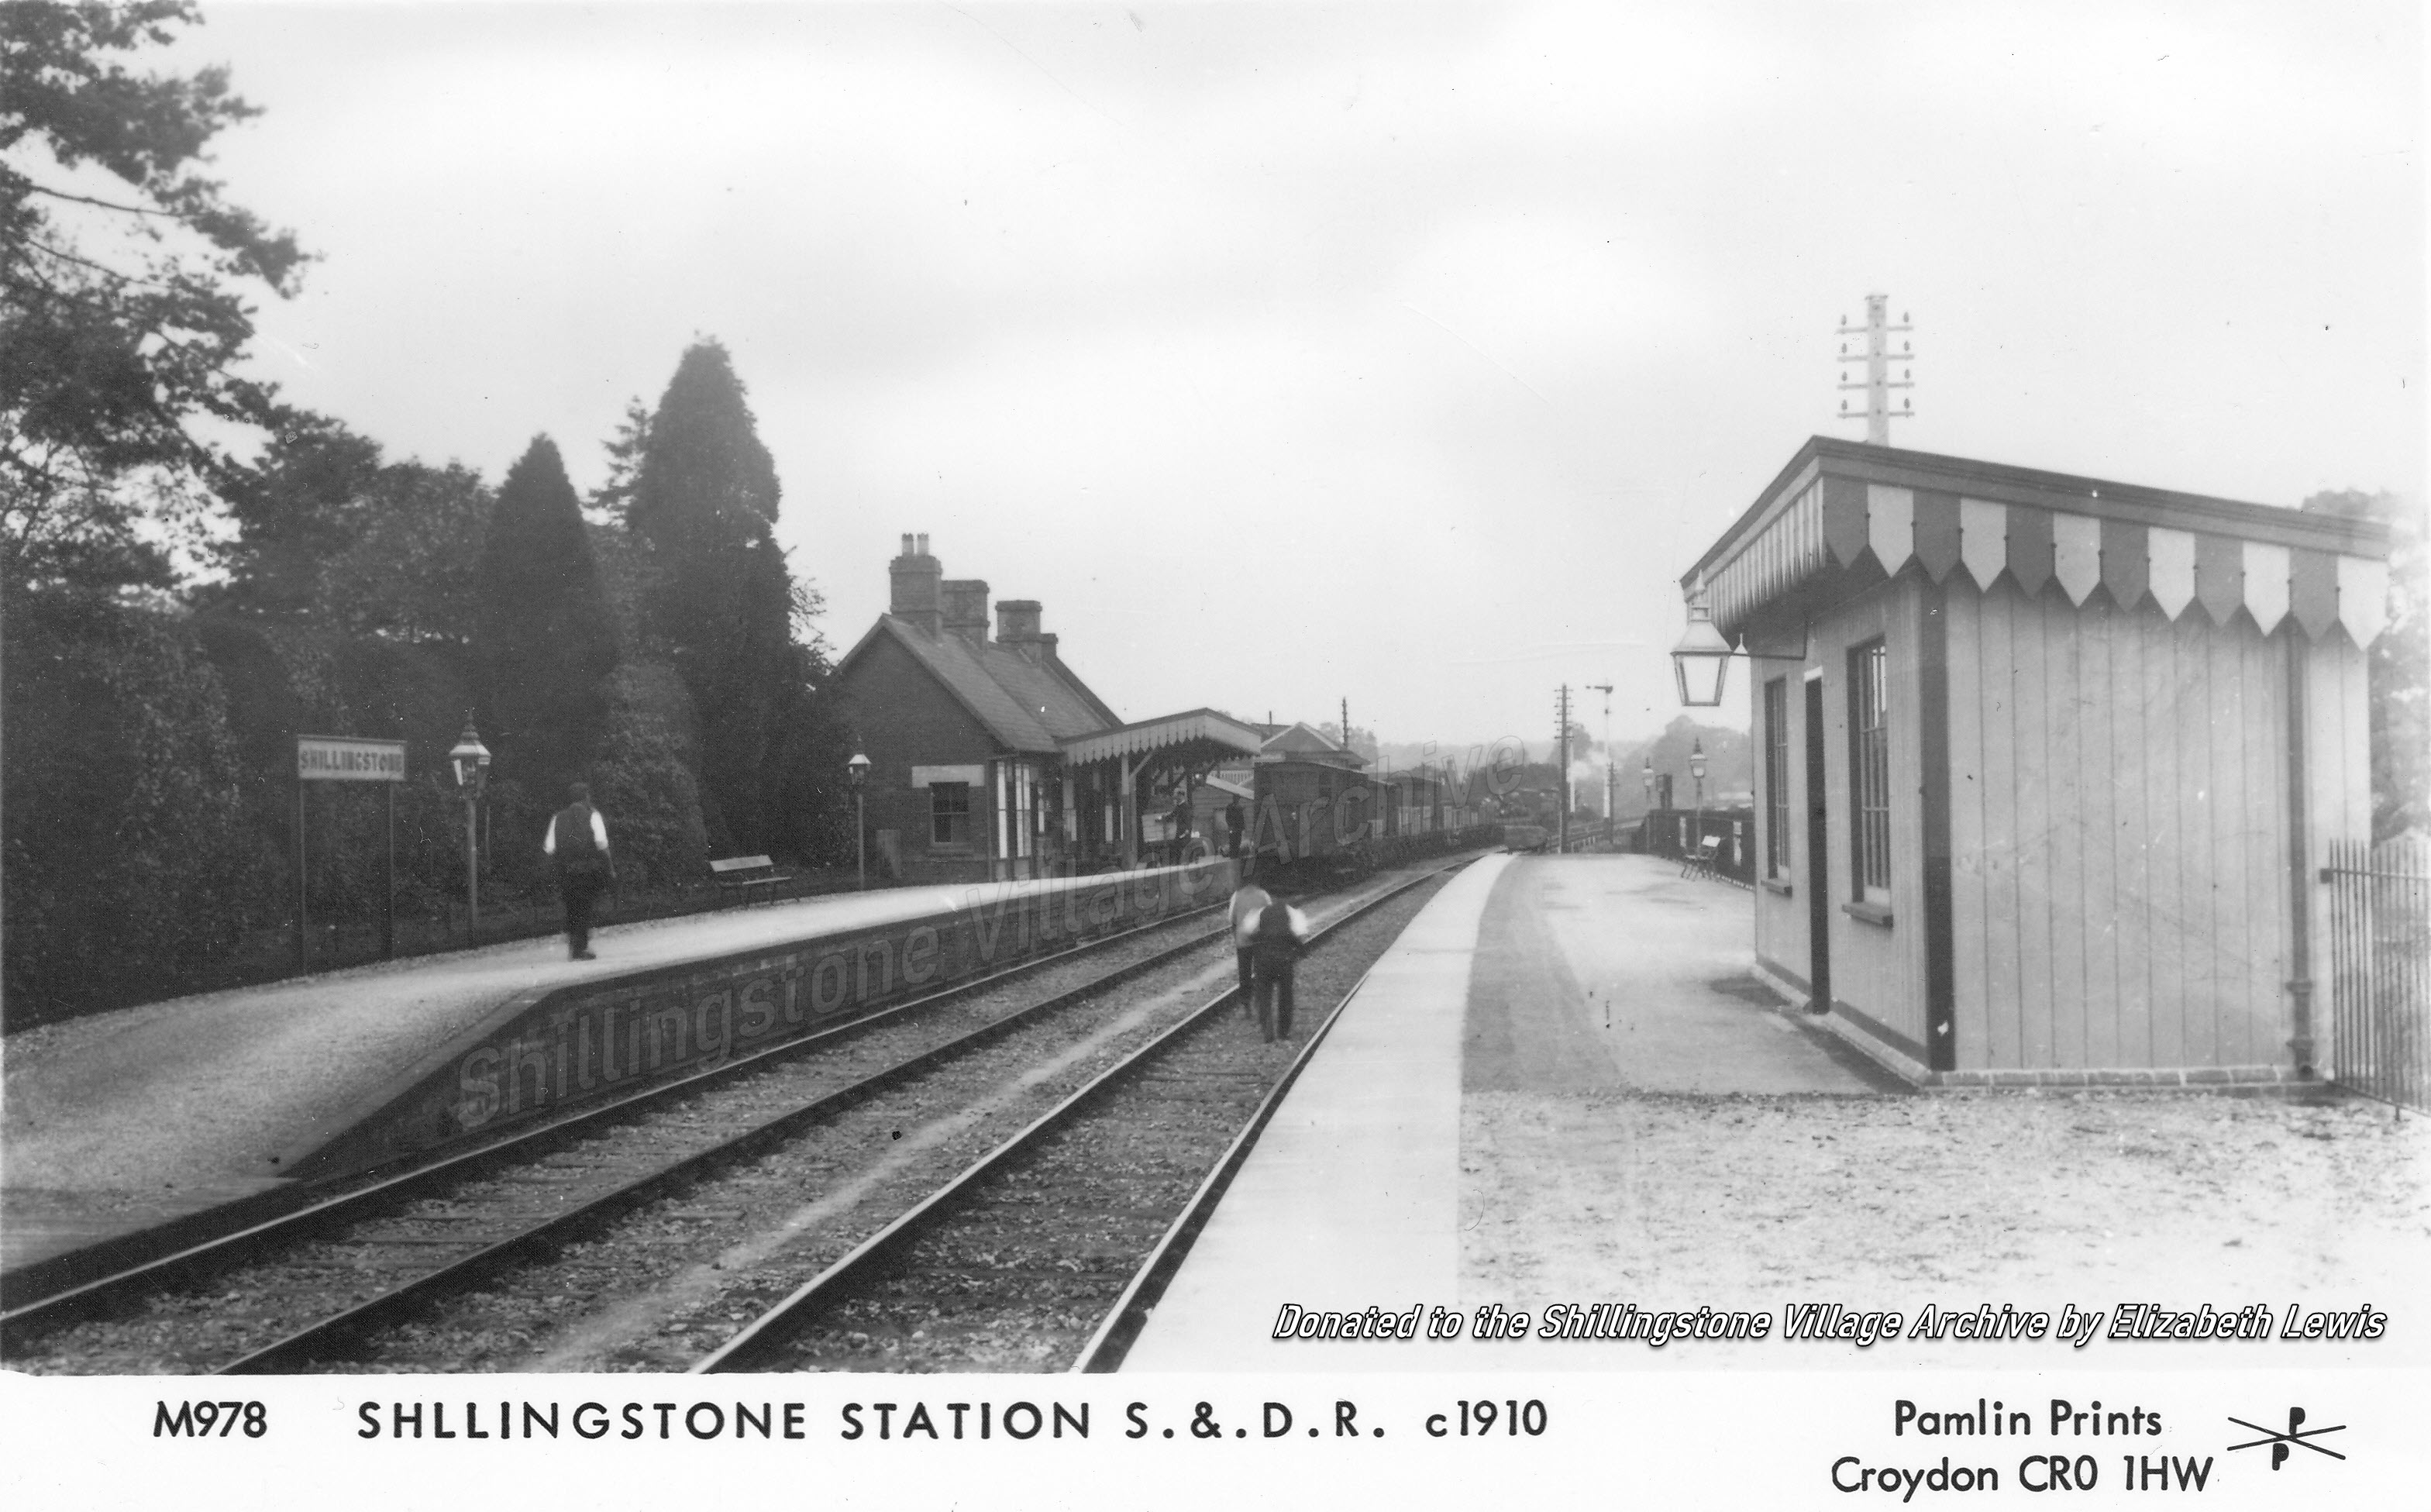 c. 1910: Shillingstone Station S&DJR